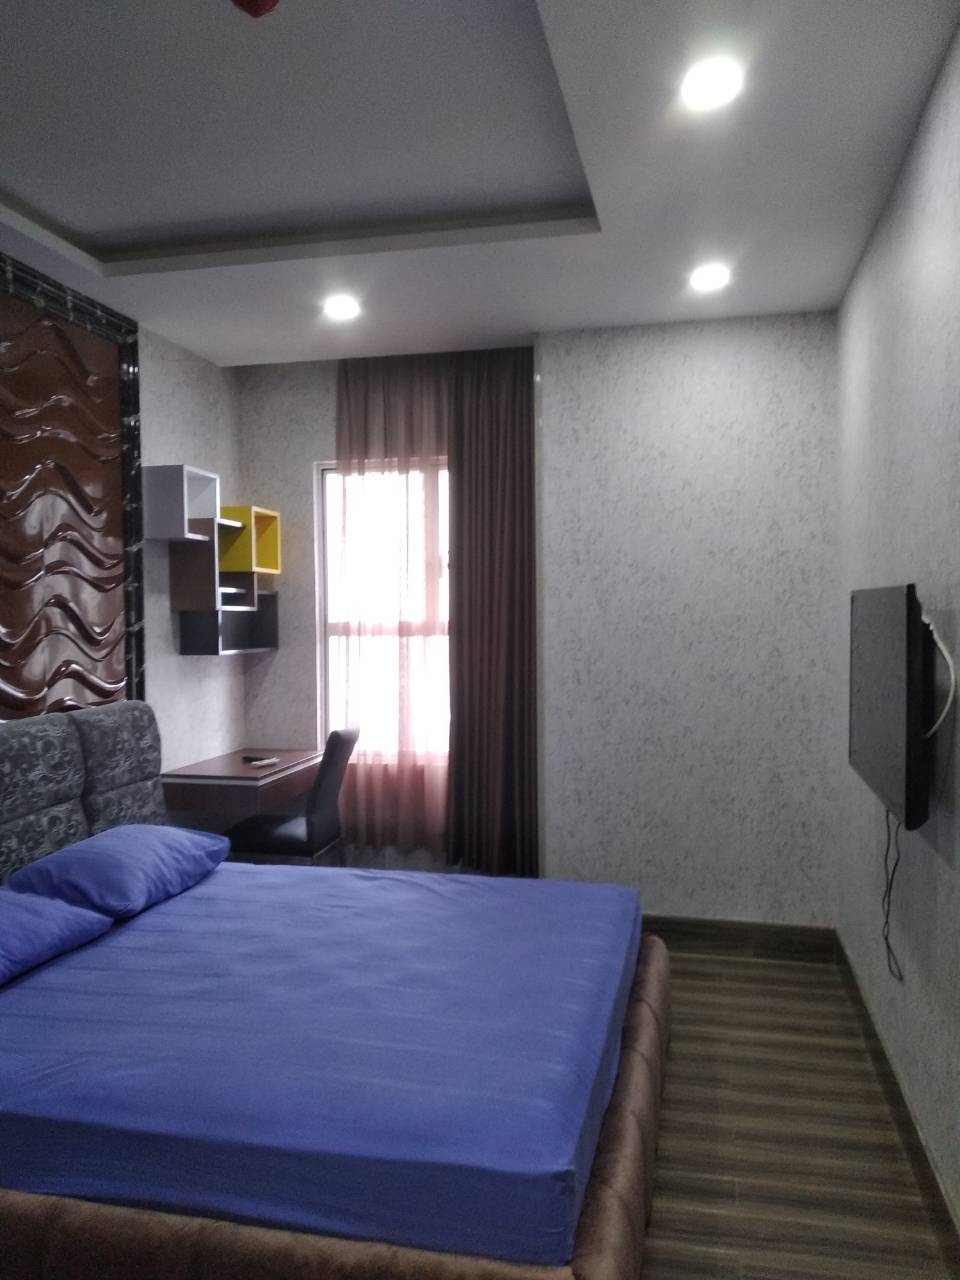 Giá rẻ cho thuê gấp căn hộ cao cấp Sài Gòn Royal - Bến Vân Đồn 2 phòng ngủ Quận 4